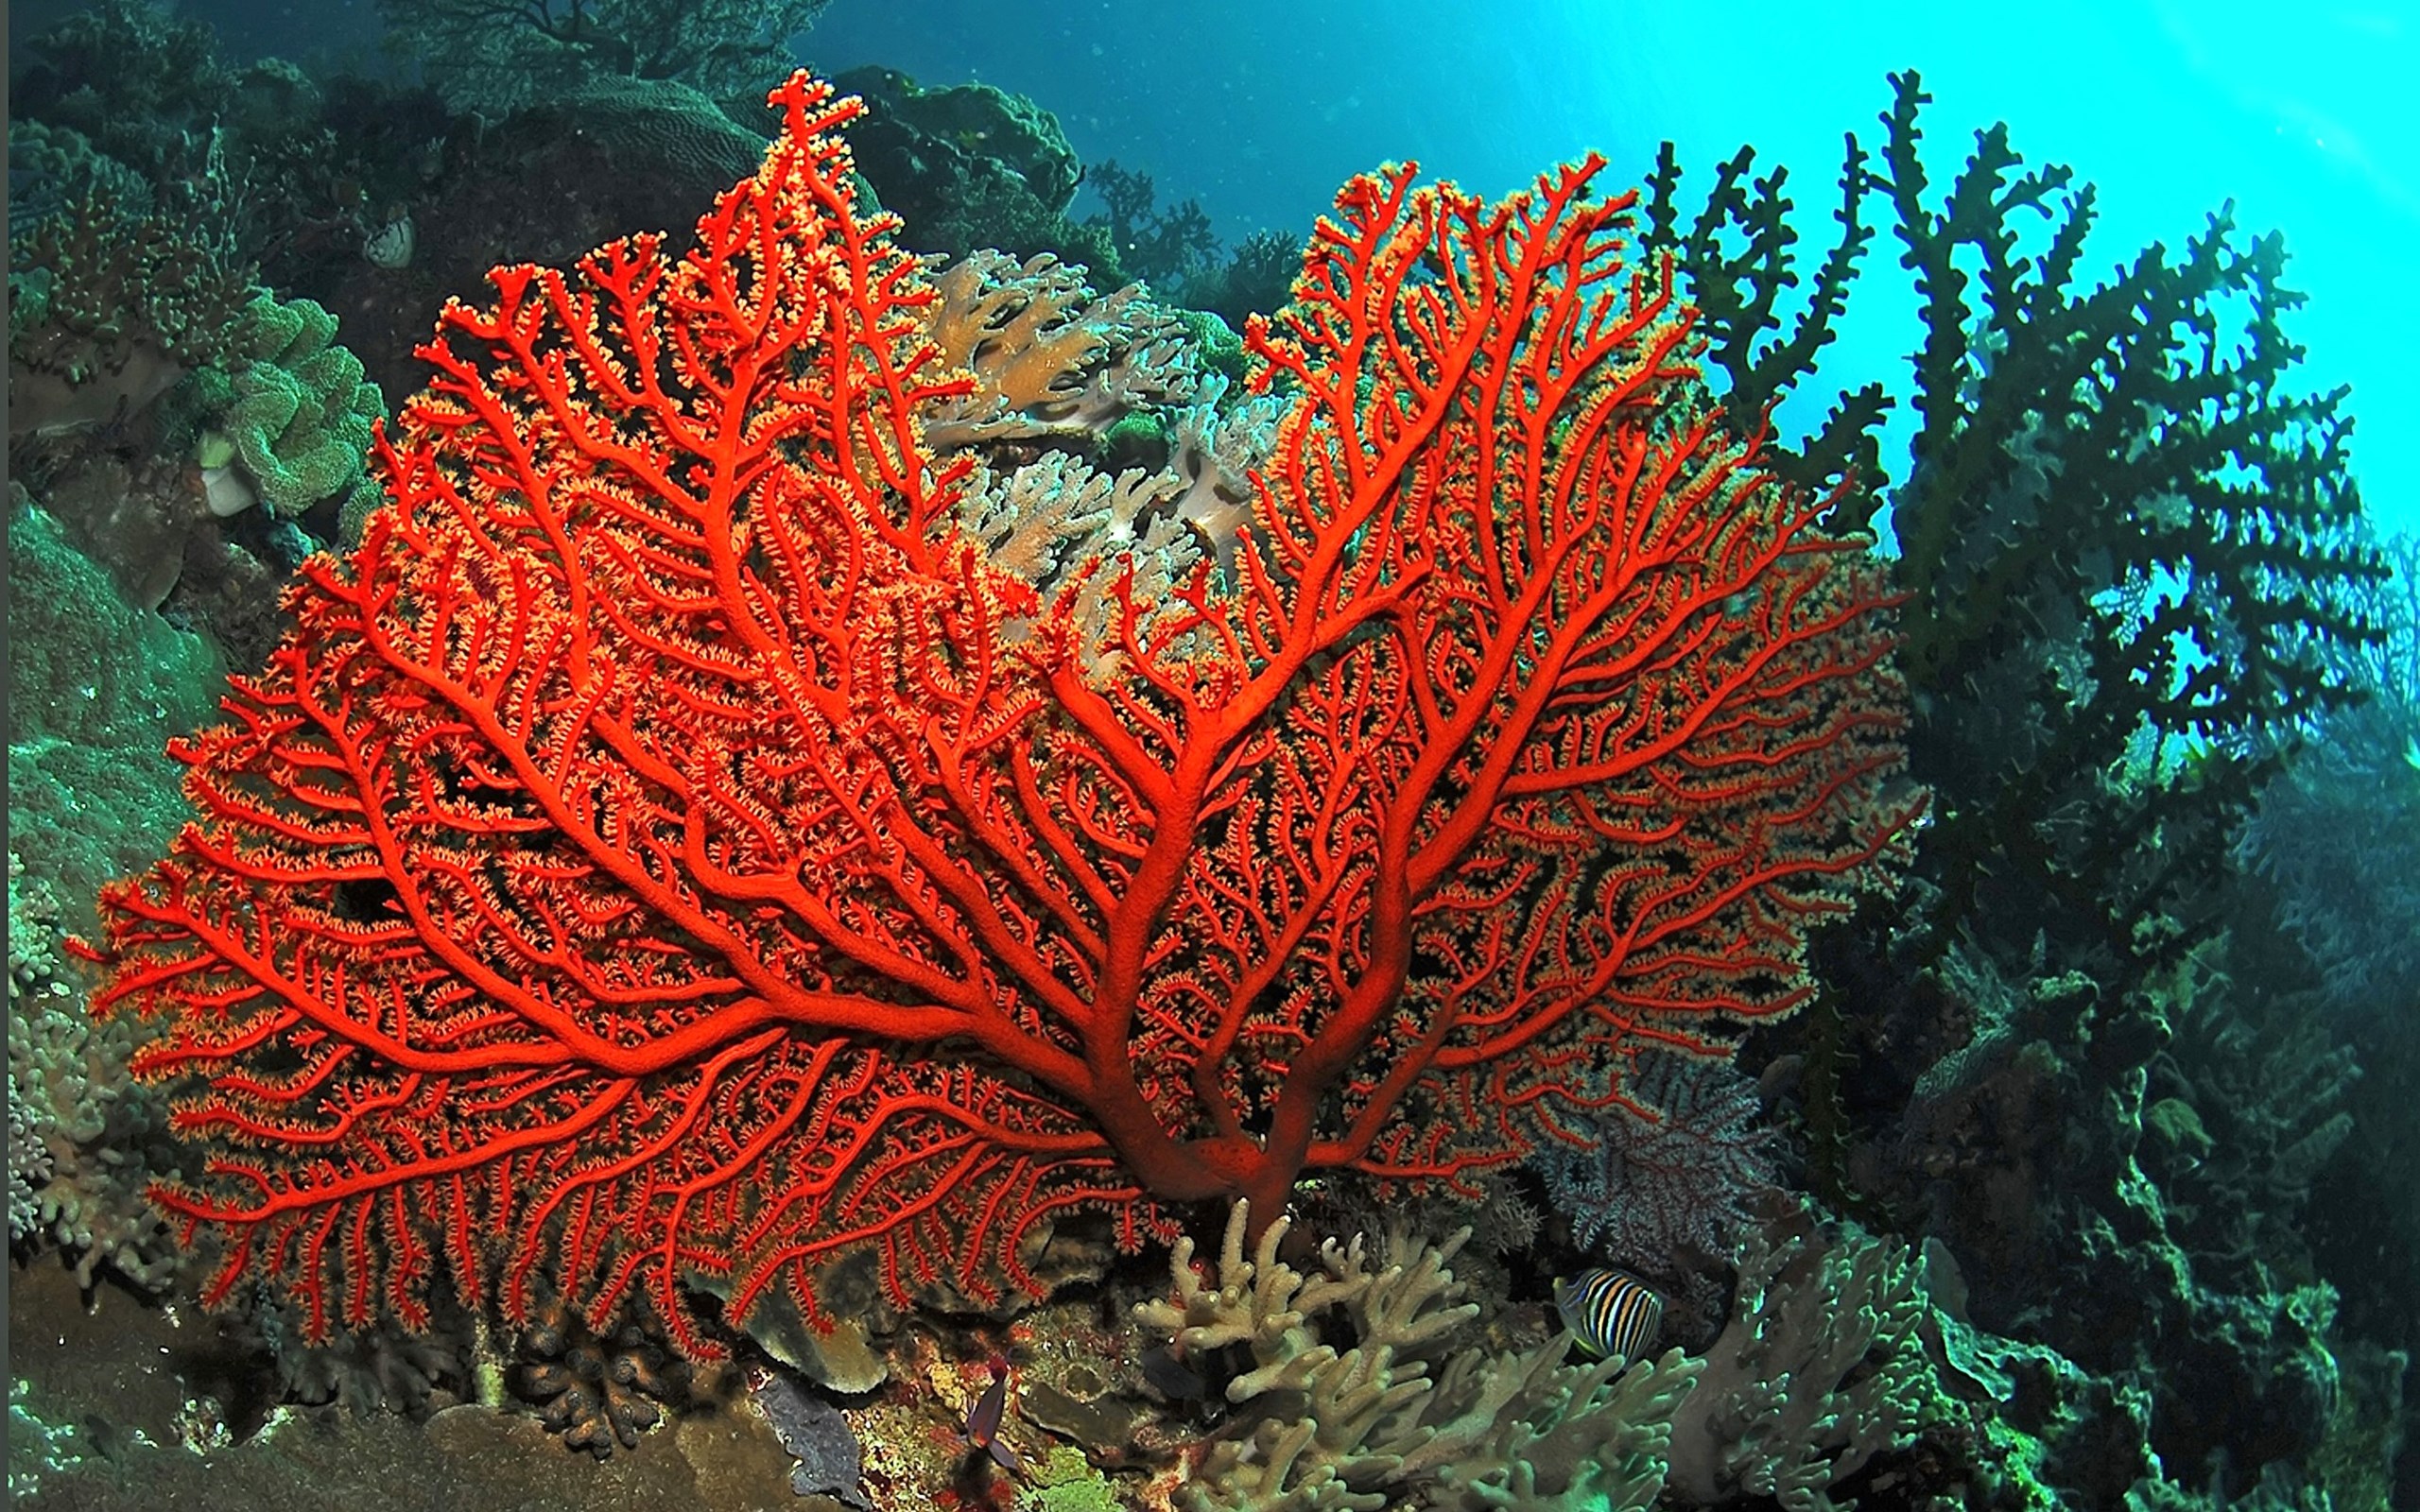 Chi asporta 700 grammi di corallo rosso da un’Area Marina Protetta rischia fino ad 8 anni di prigione